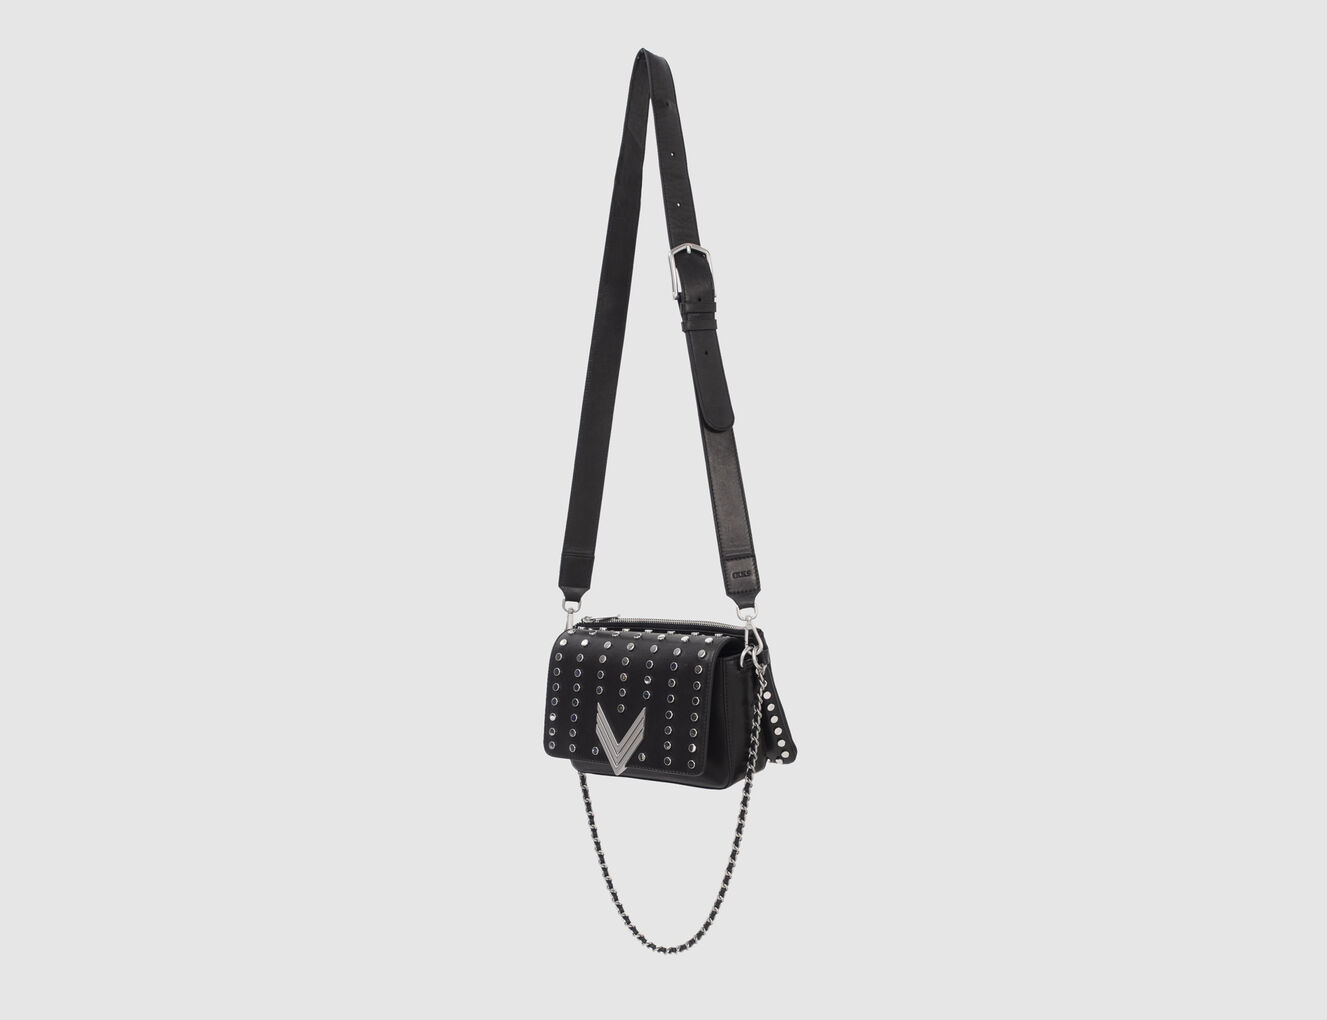 Damentasche 111 BRONX aus schwarzem Leder mit Maxi-Nieten - IKKS-6